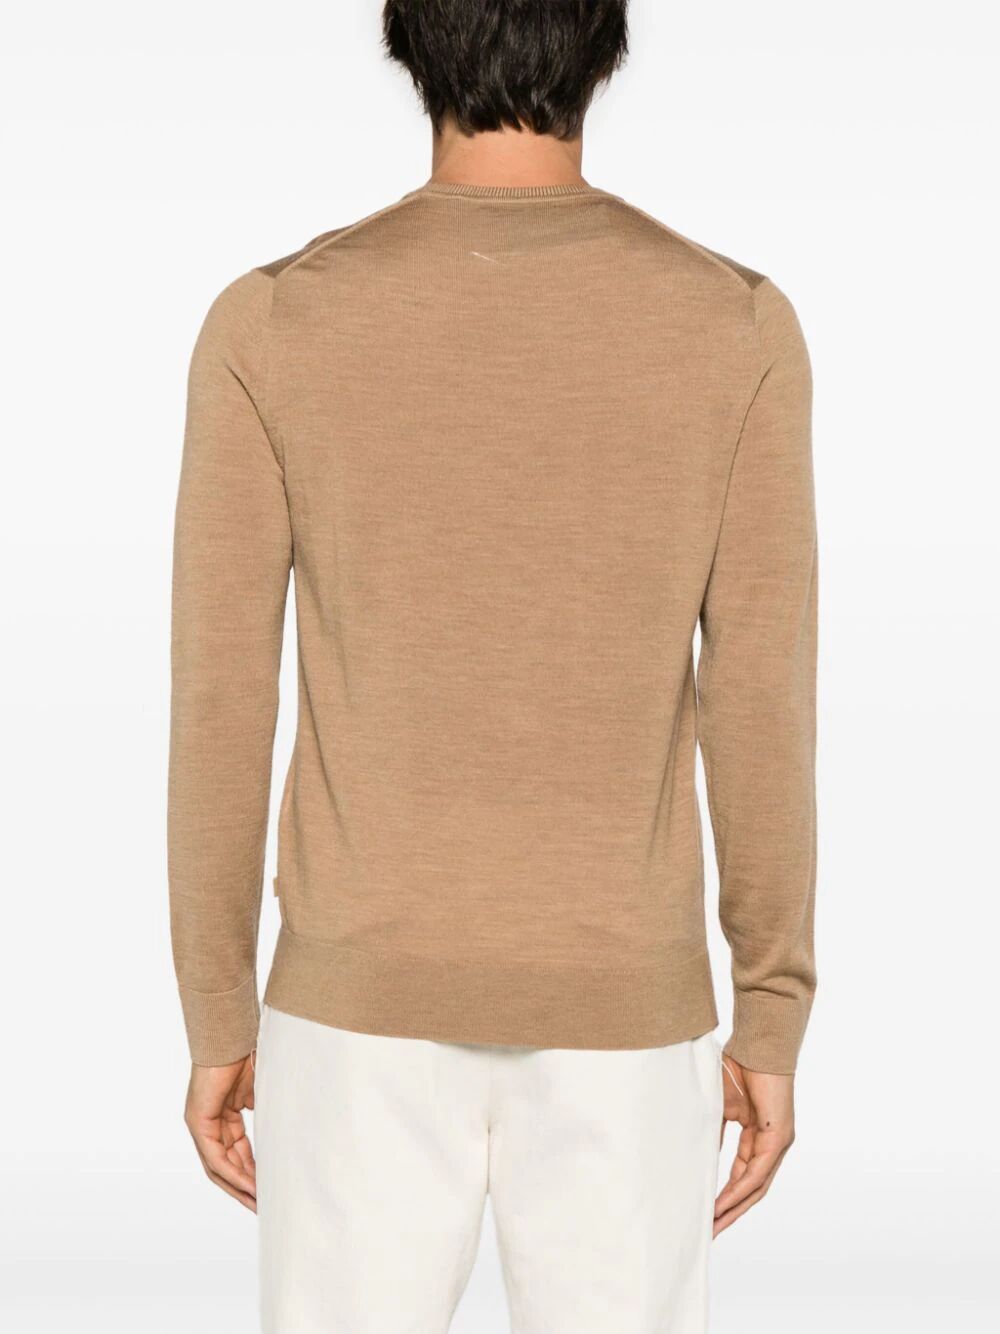 Shop Michael Kors Core Merino Crew Neck Sweater In Brown